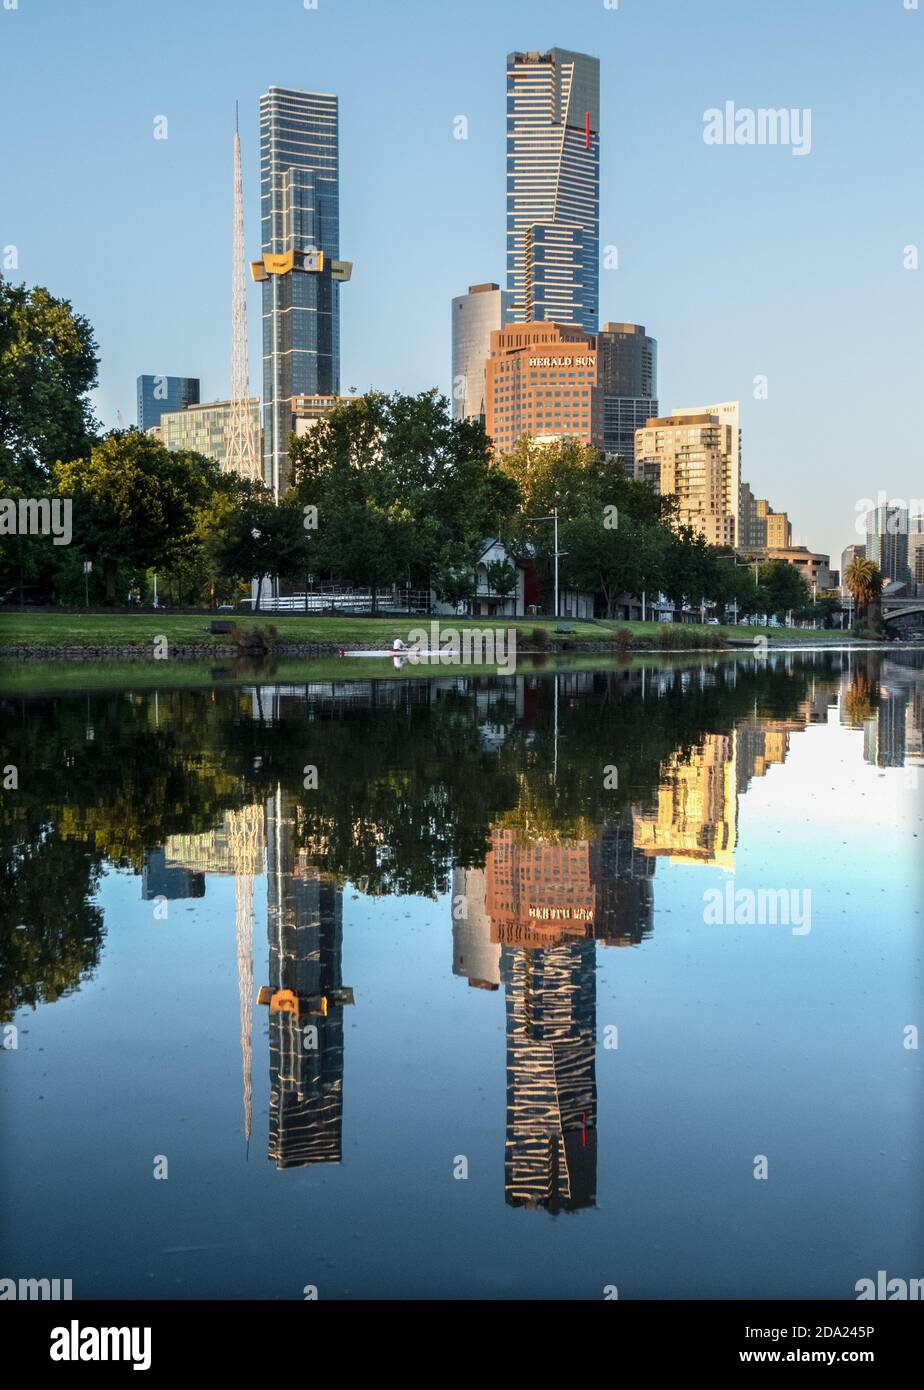 Melbourne Australien: Die Skyline von Melbourne spiegelt sich im stillen Wasser des Yarra River wider. Stockfoto